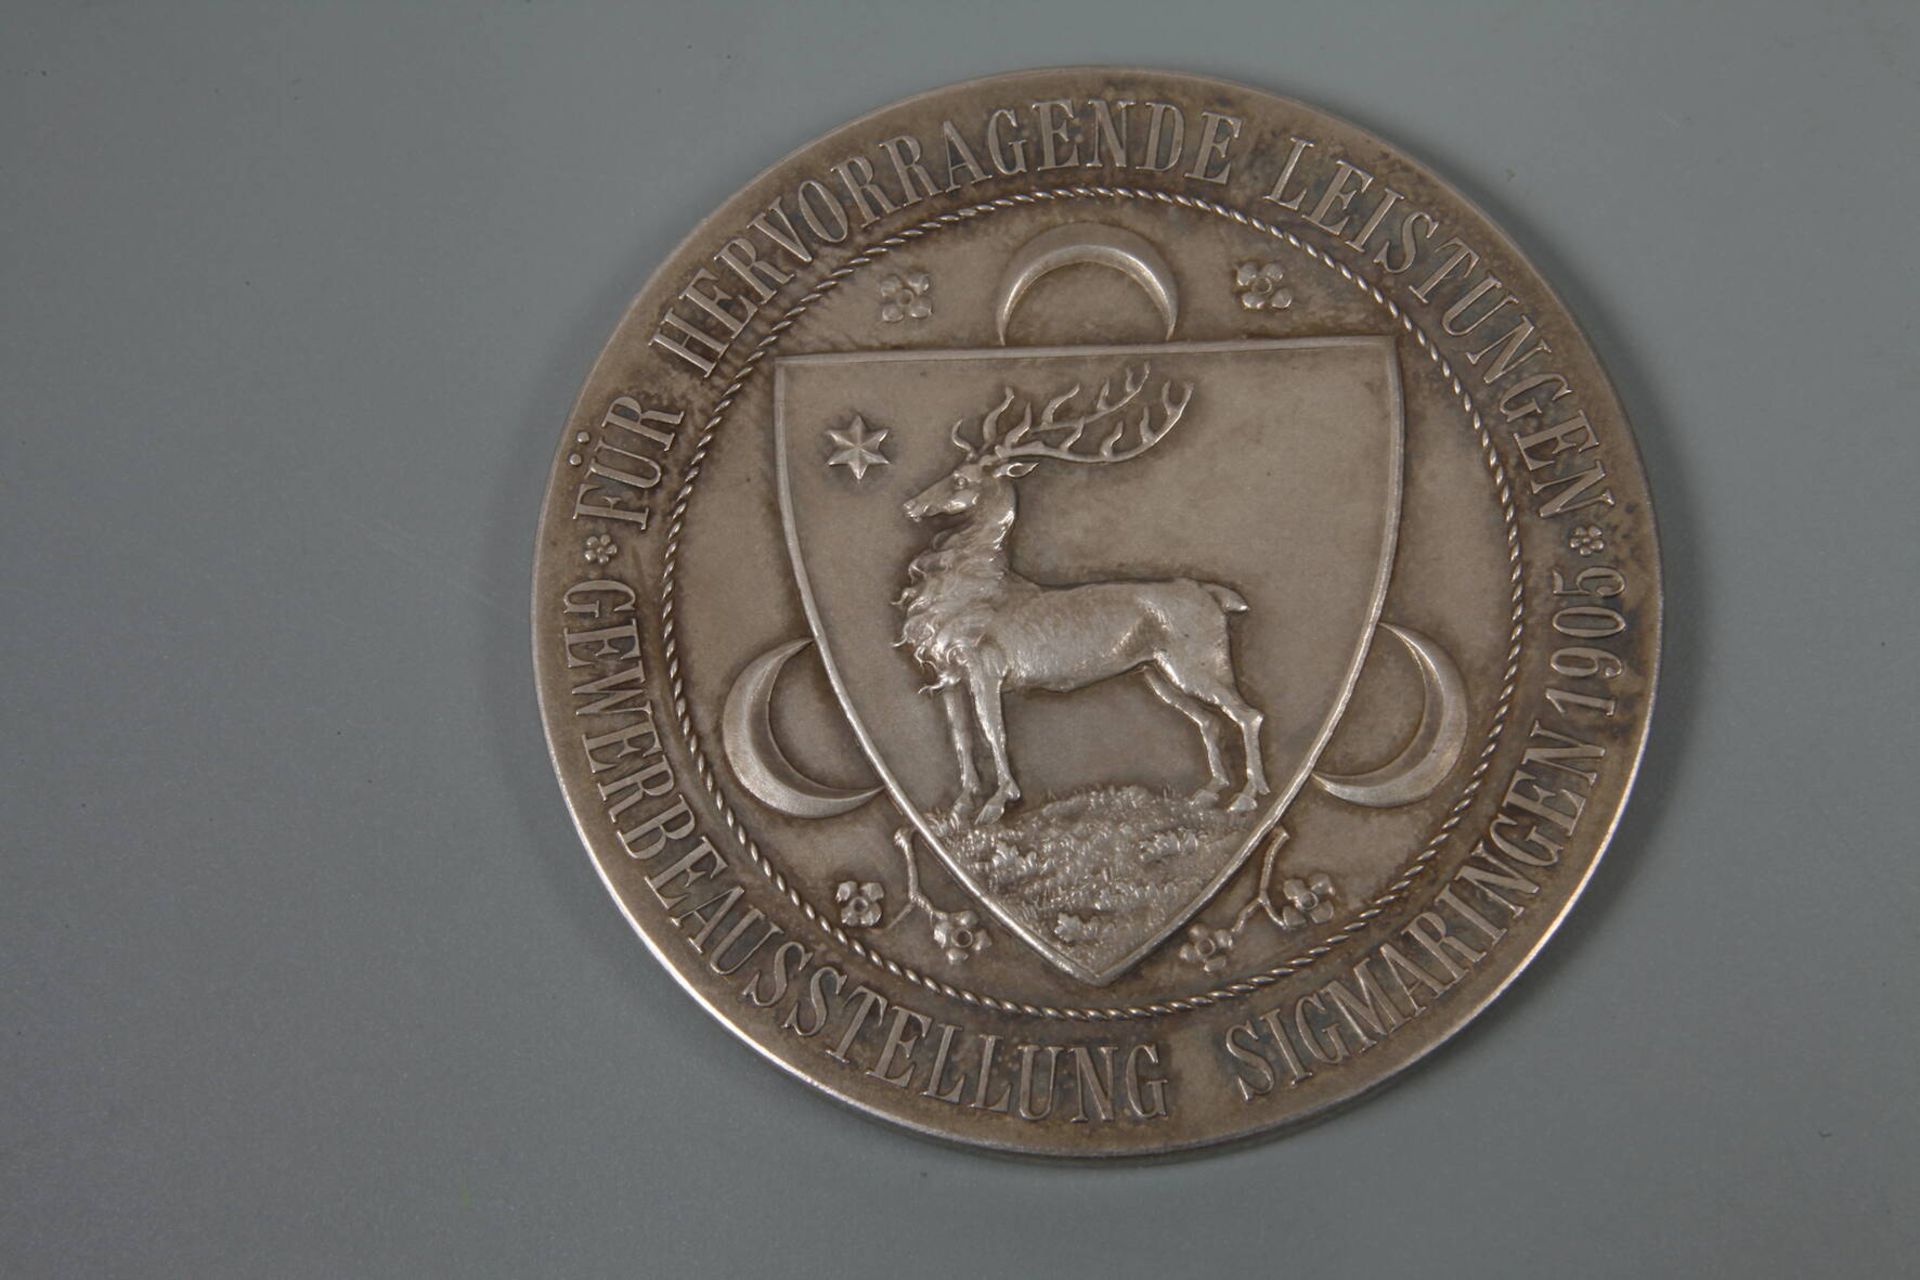 Medaille Gewerbeausstellung Sigmaringen - Image 3 of 4